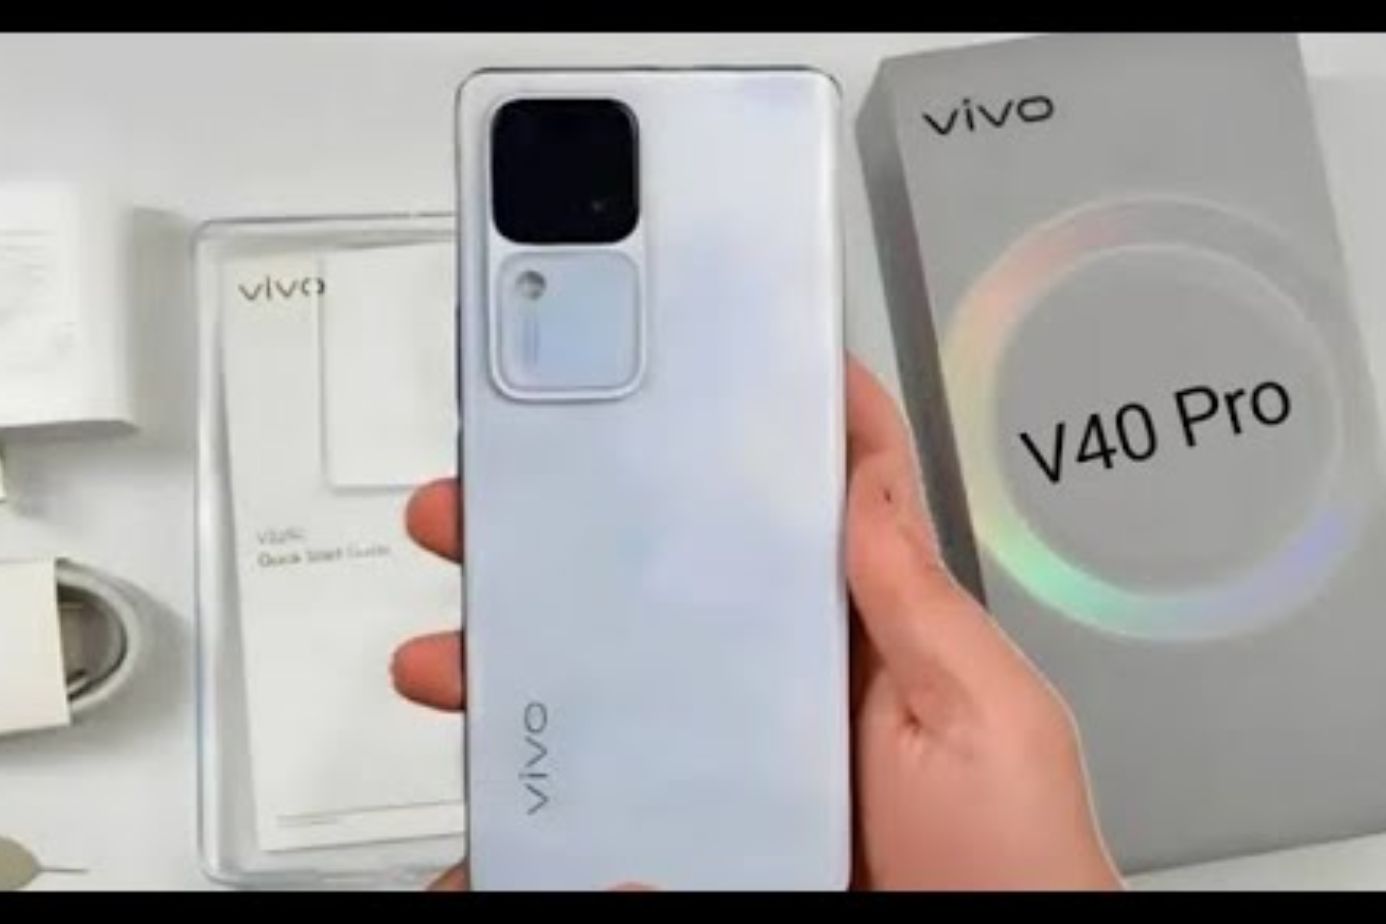 Vivo V40 Pro